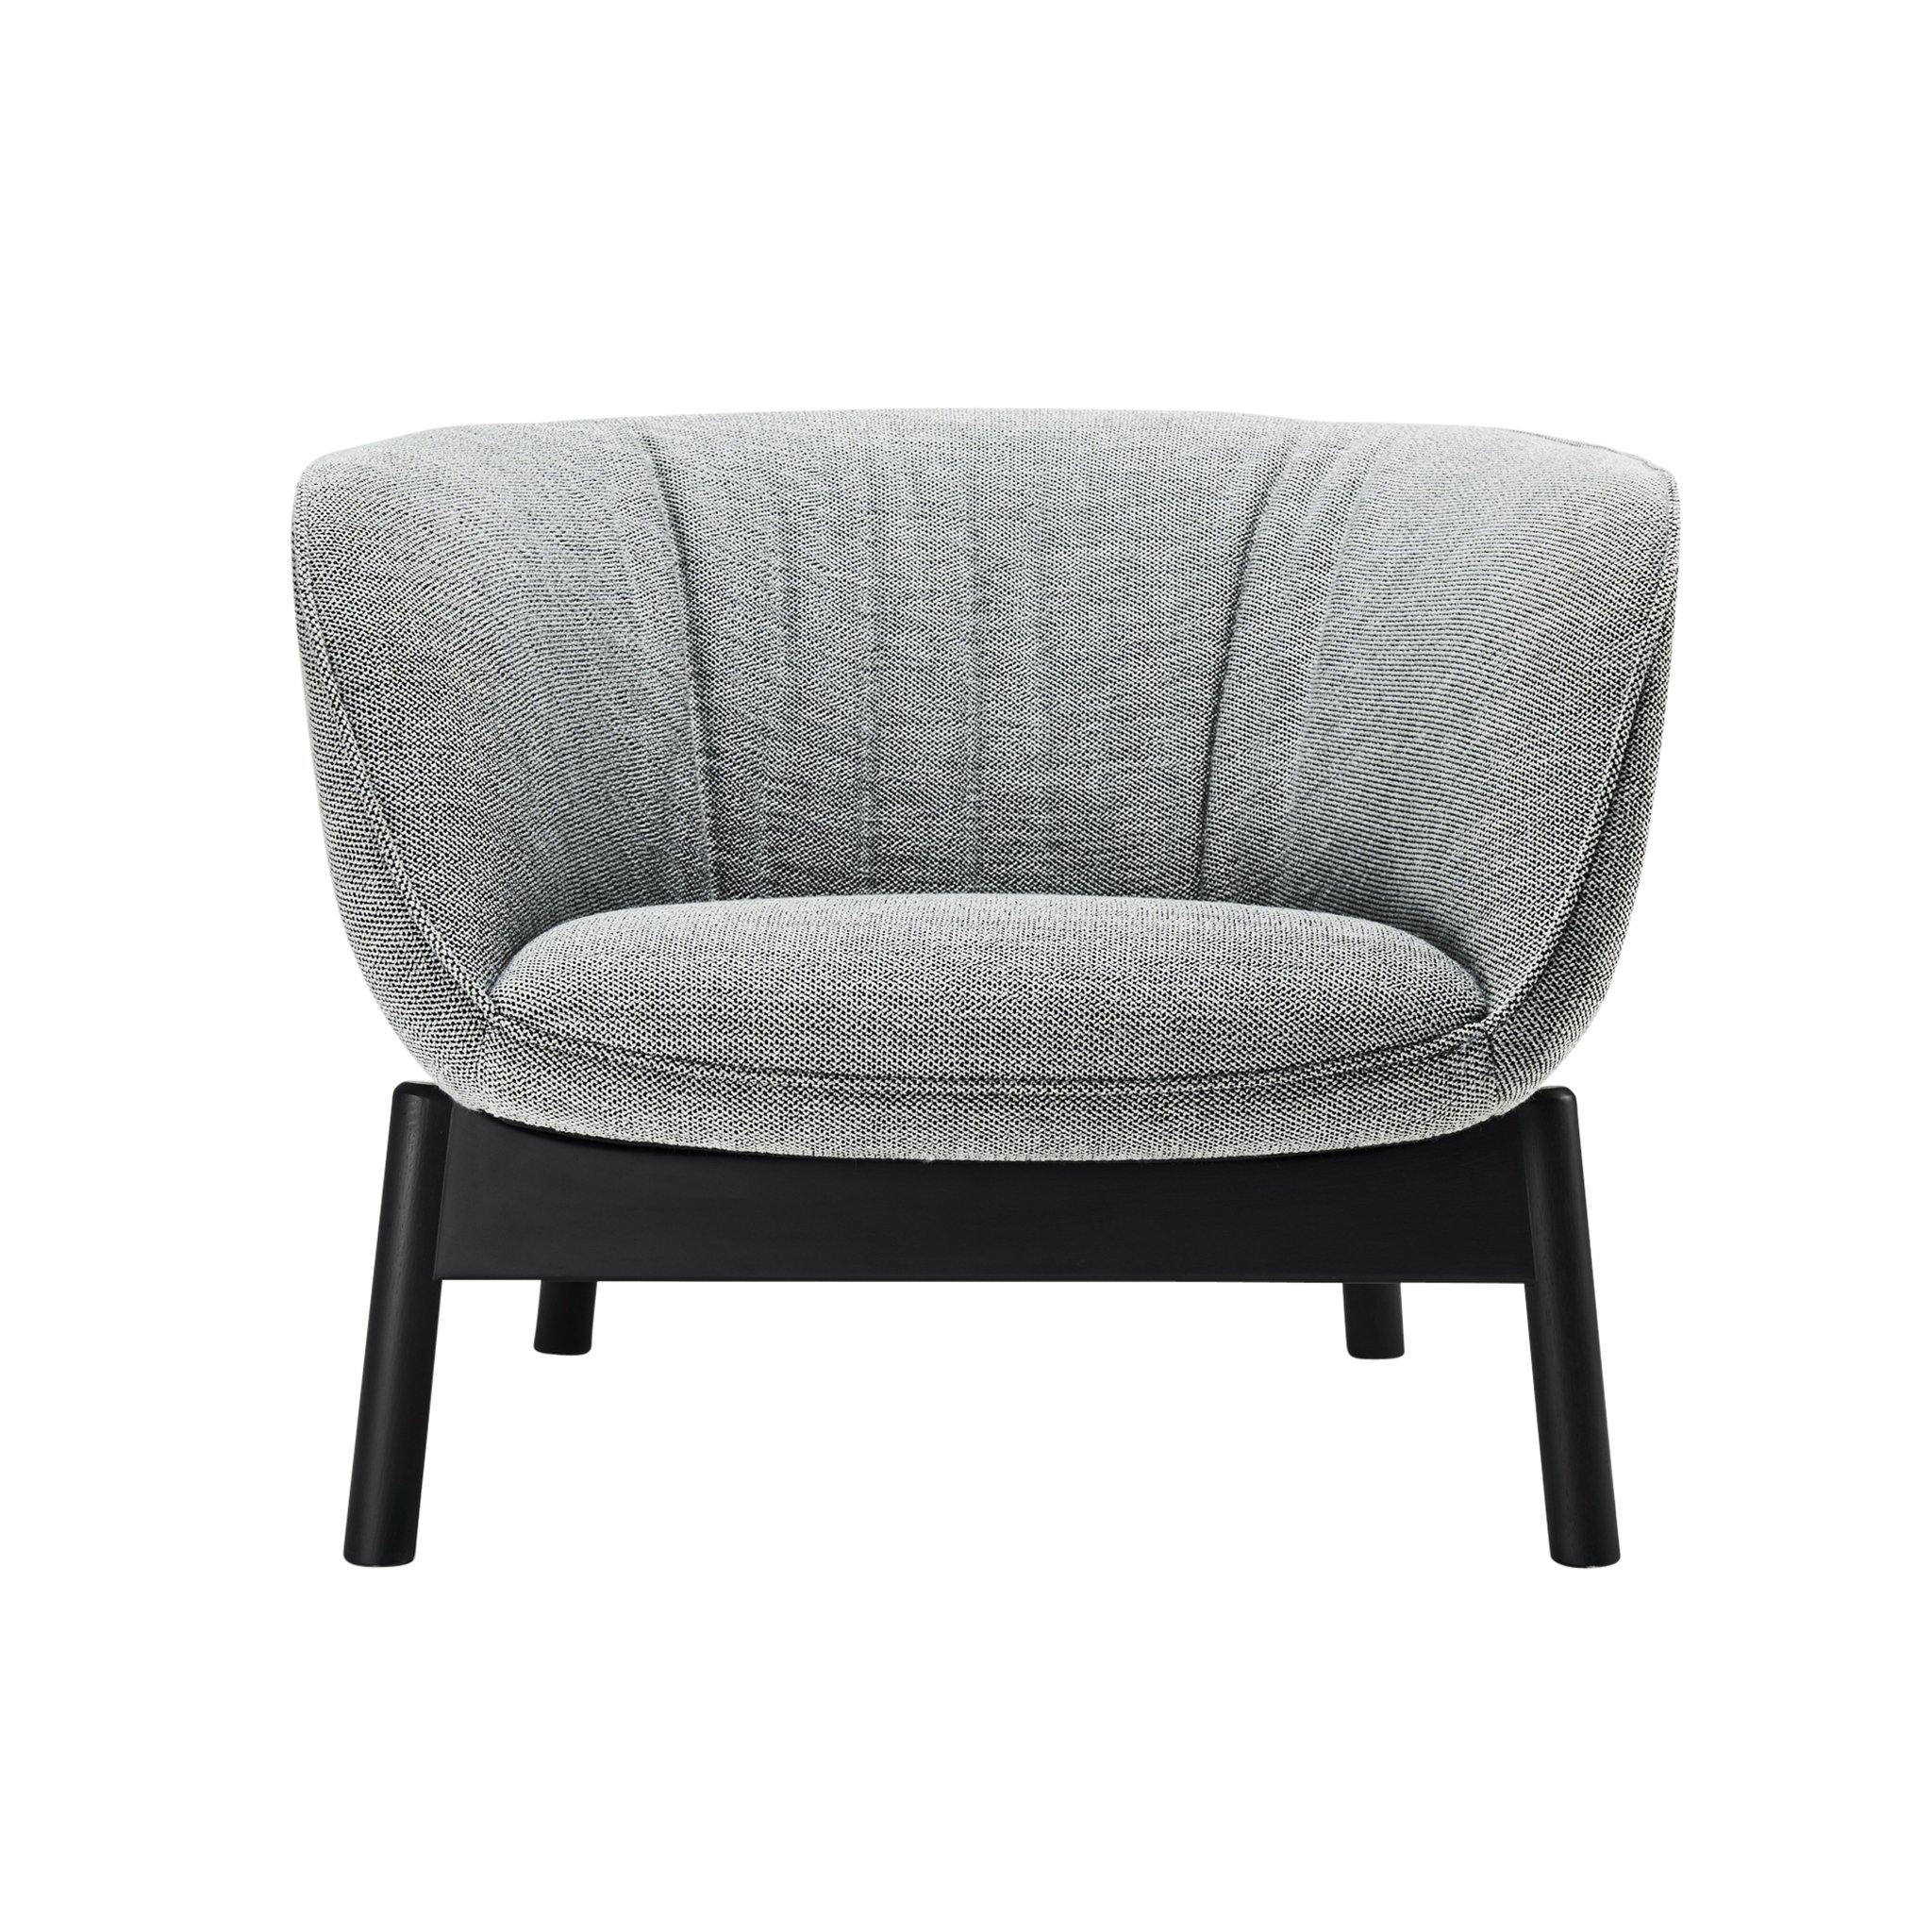 VISTA - Lounge Chair - POET SDN BHD 